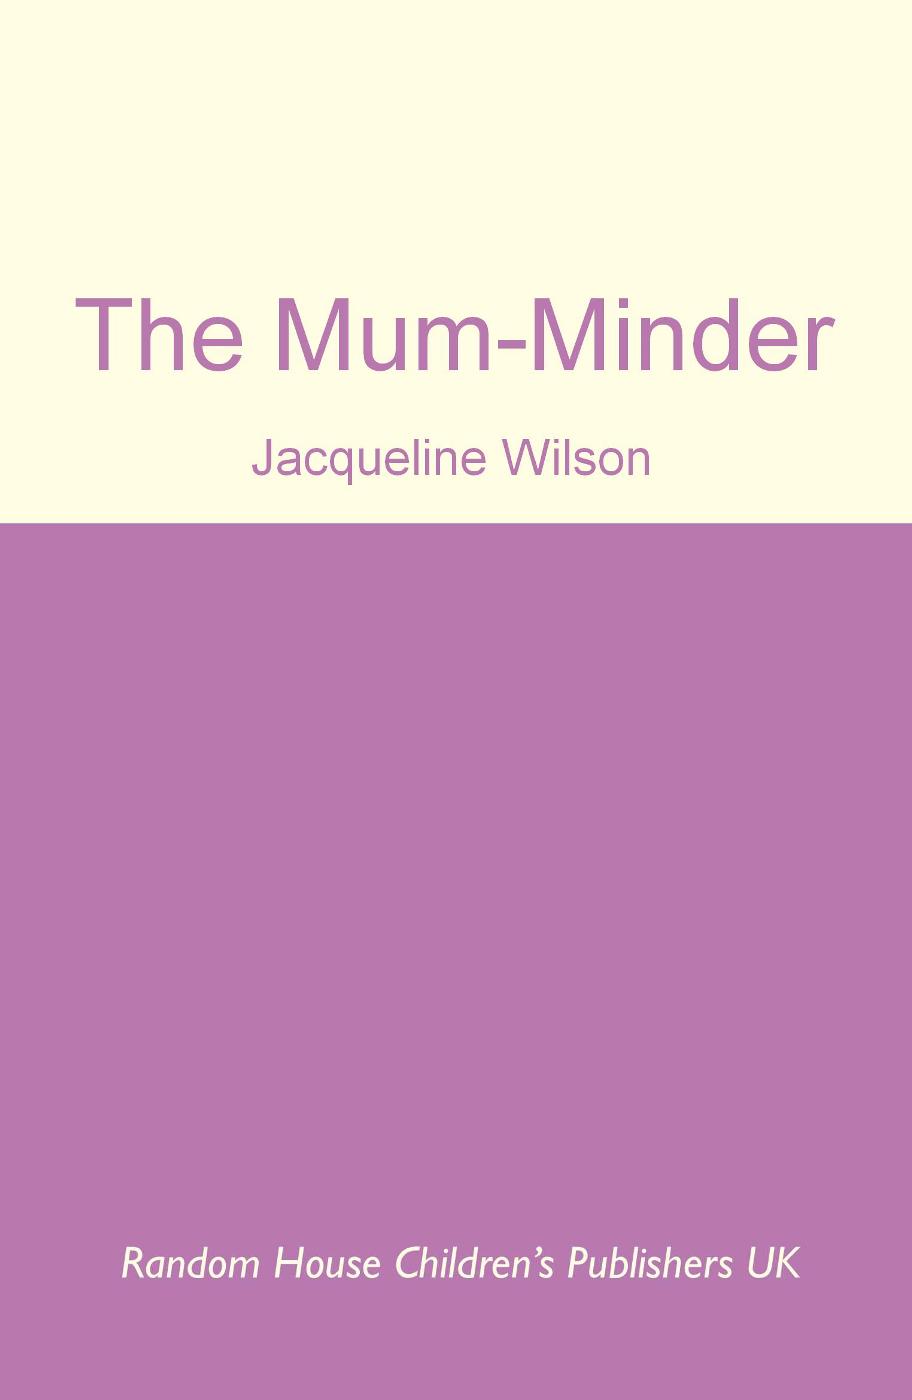 The Mum-Minder (2009)